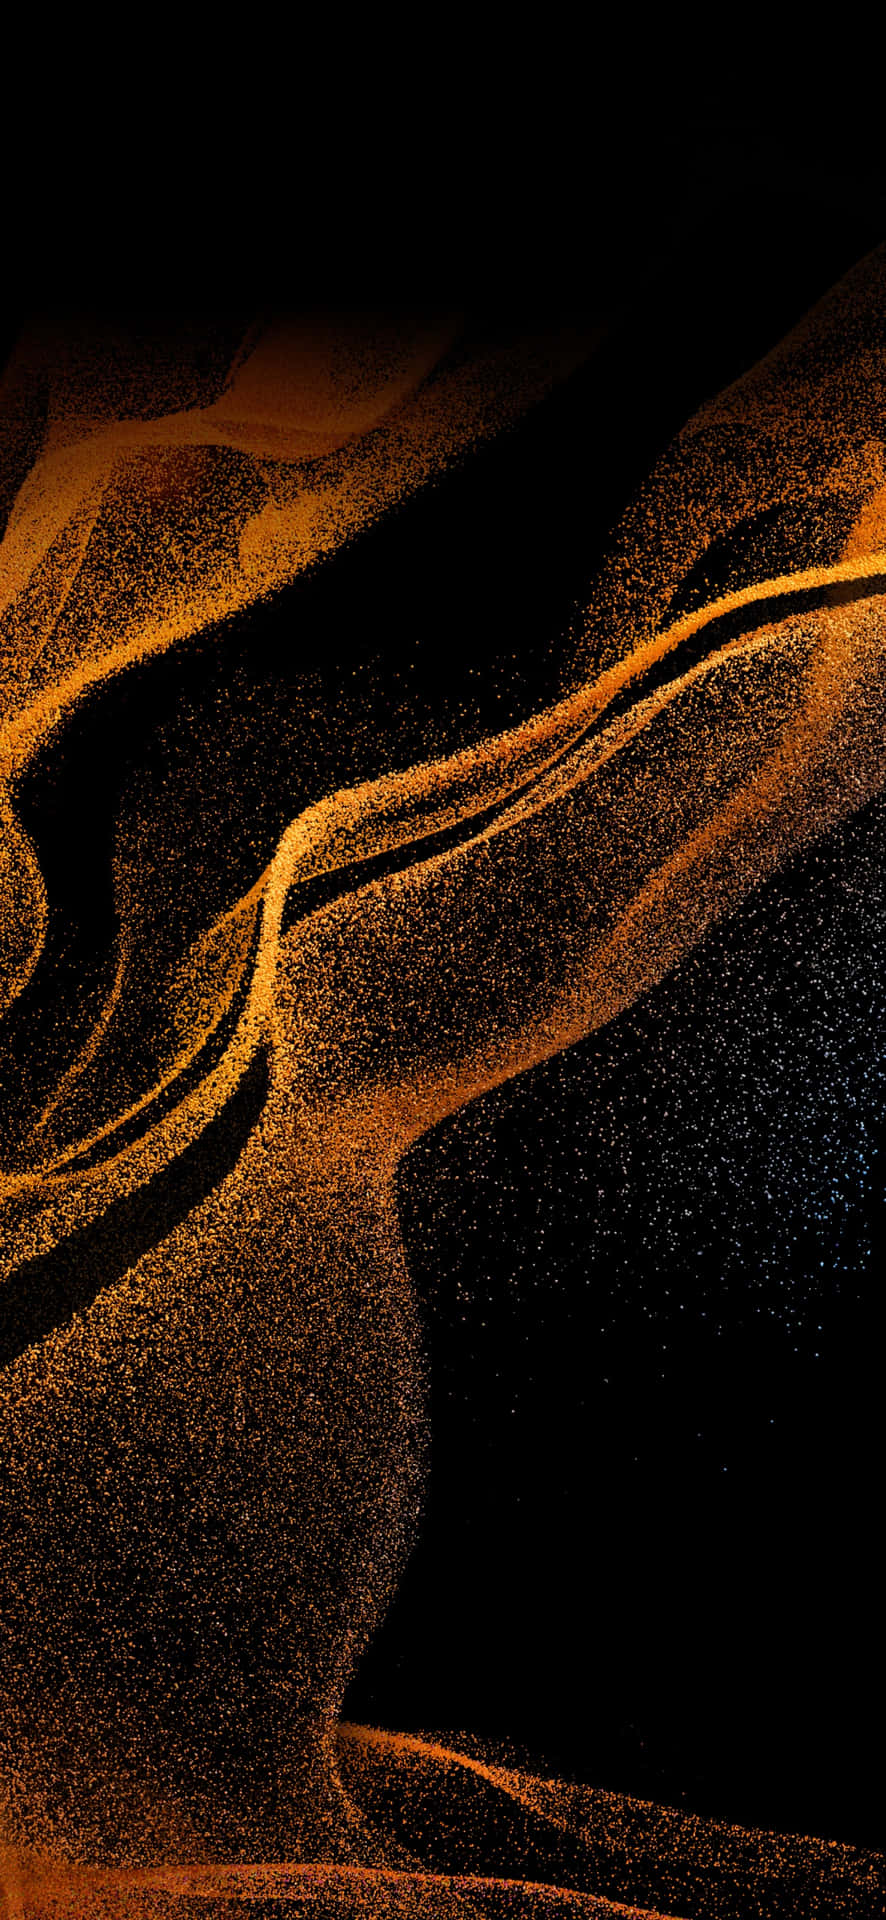 Abstract Golden Sands Artwork Wallpaper